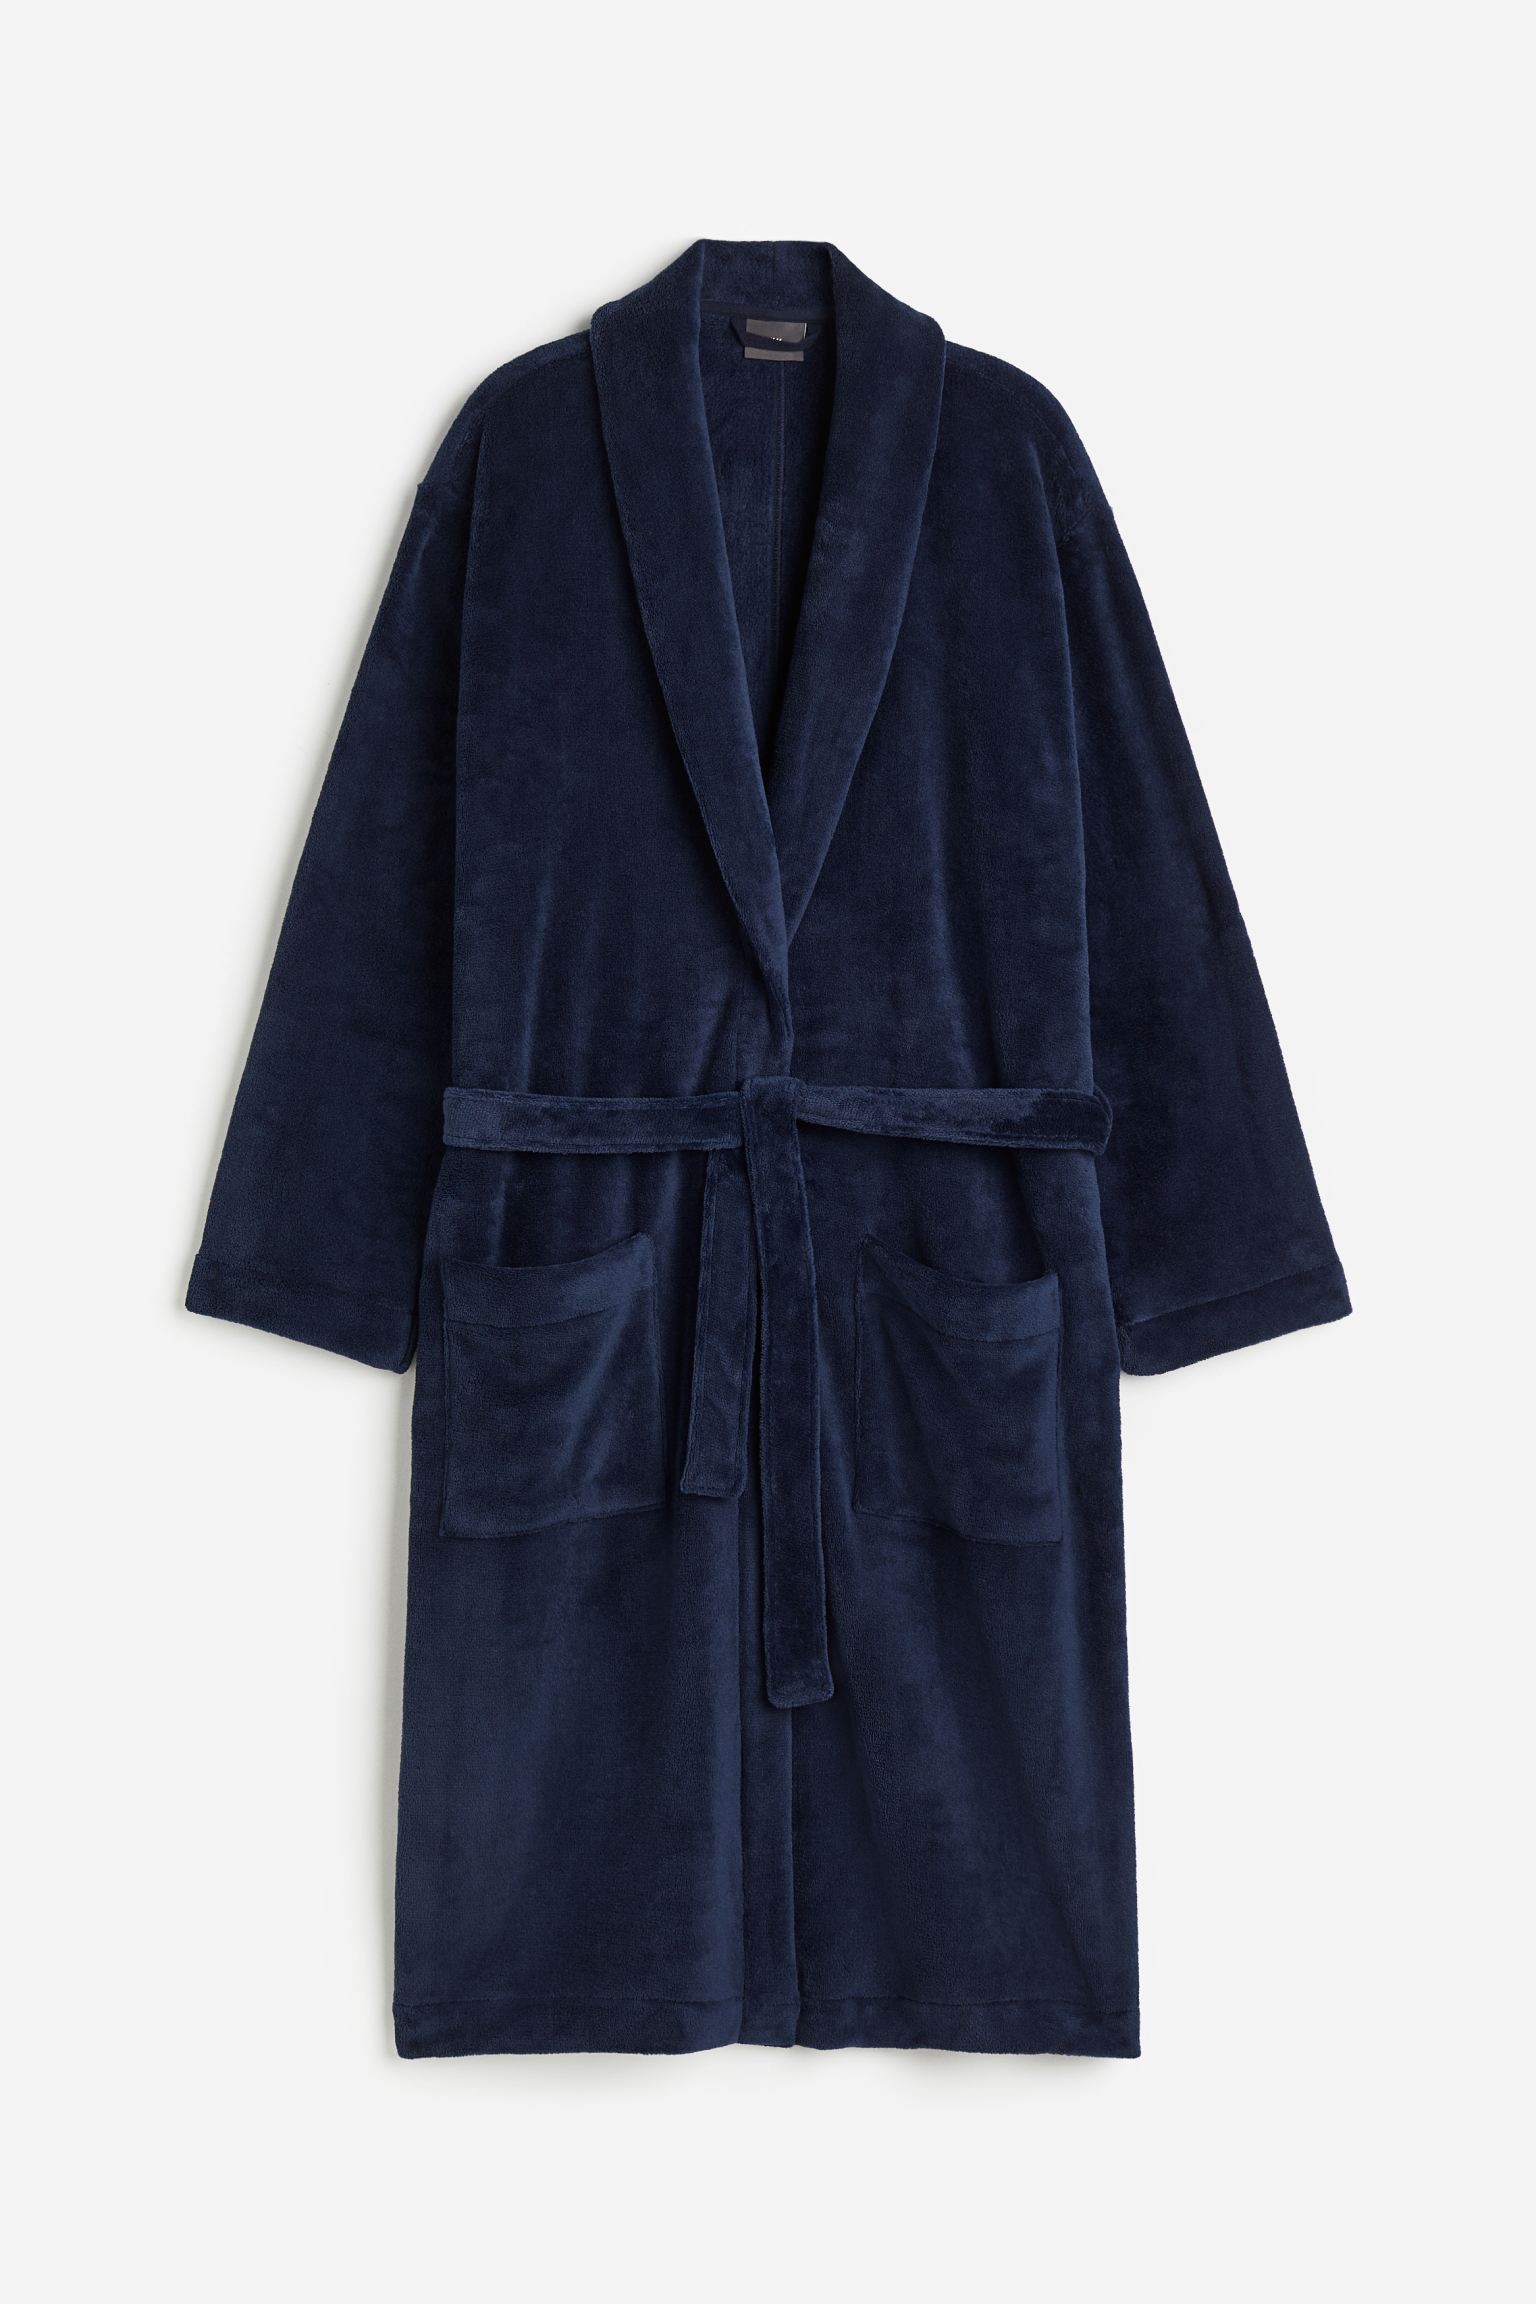 H&M Home Флисовый халат, Темно-синий, Разные размеры 0575238011 | 0575238011